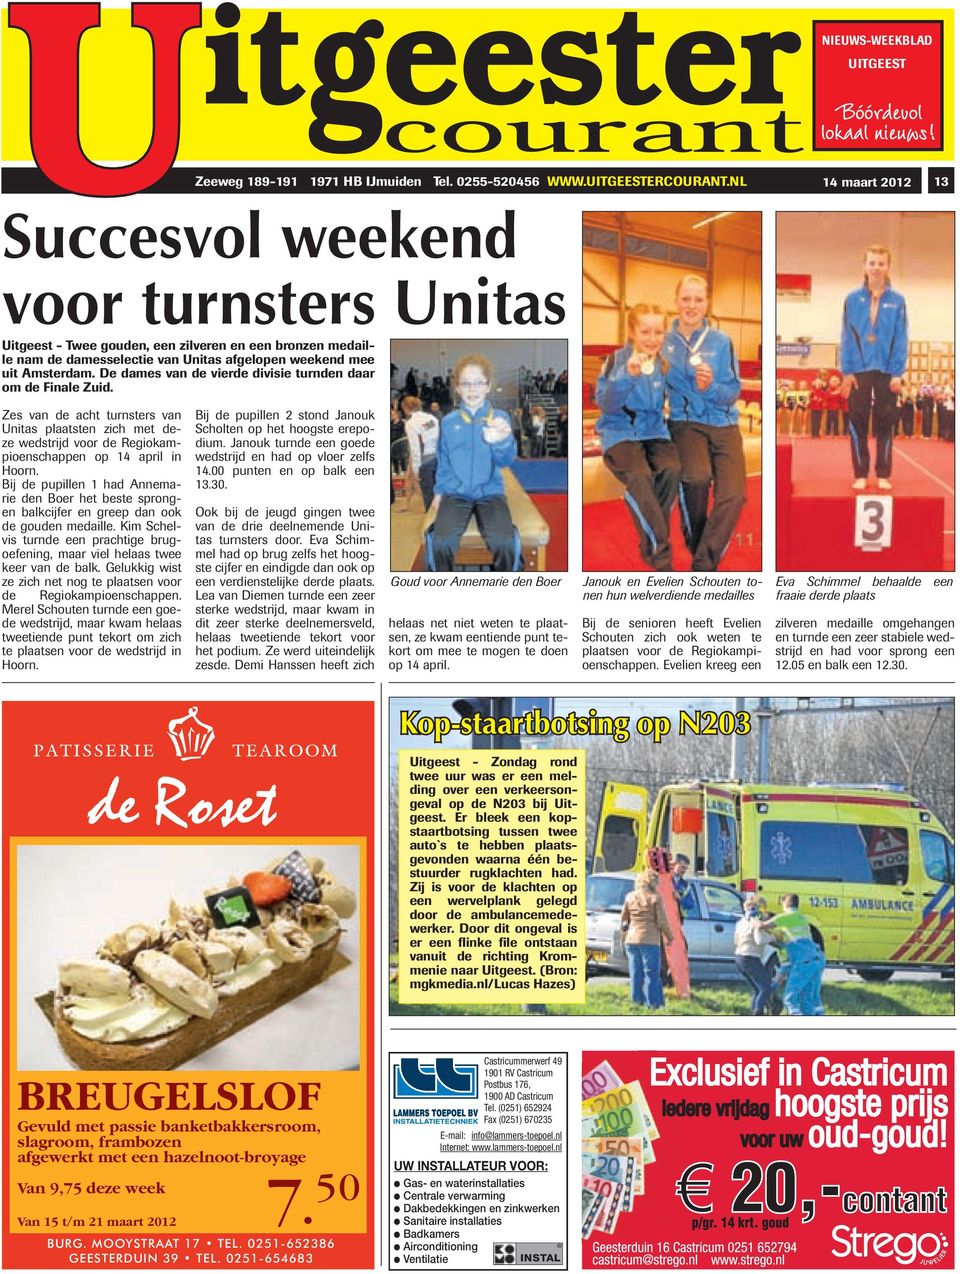 De dames van de vierde divisie turnden daar om de Finale Zuid. Zes van de acht turnsters van Unitas plaatsten zich met deze wedstrijd voor de Regiokampioenschappen op 14 april in Hoorn.